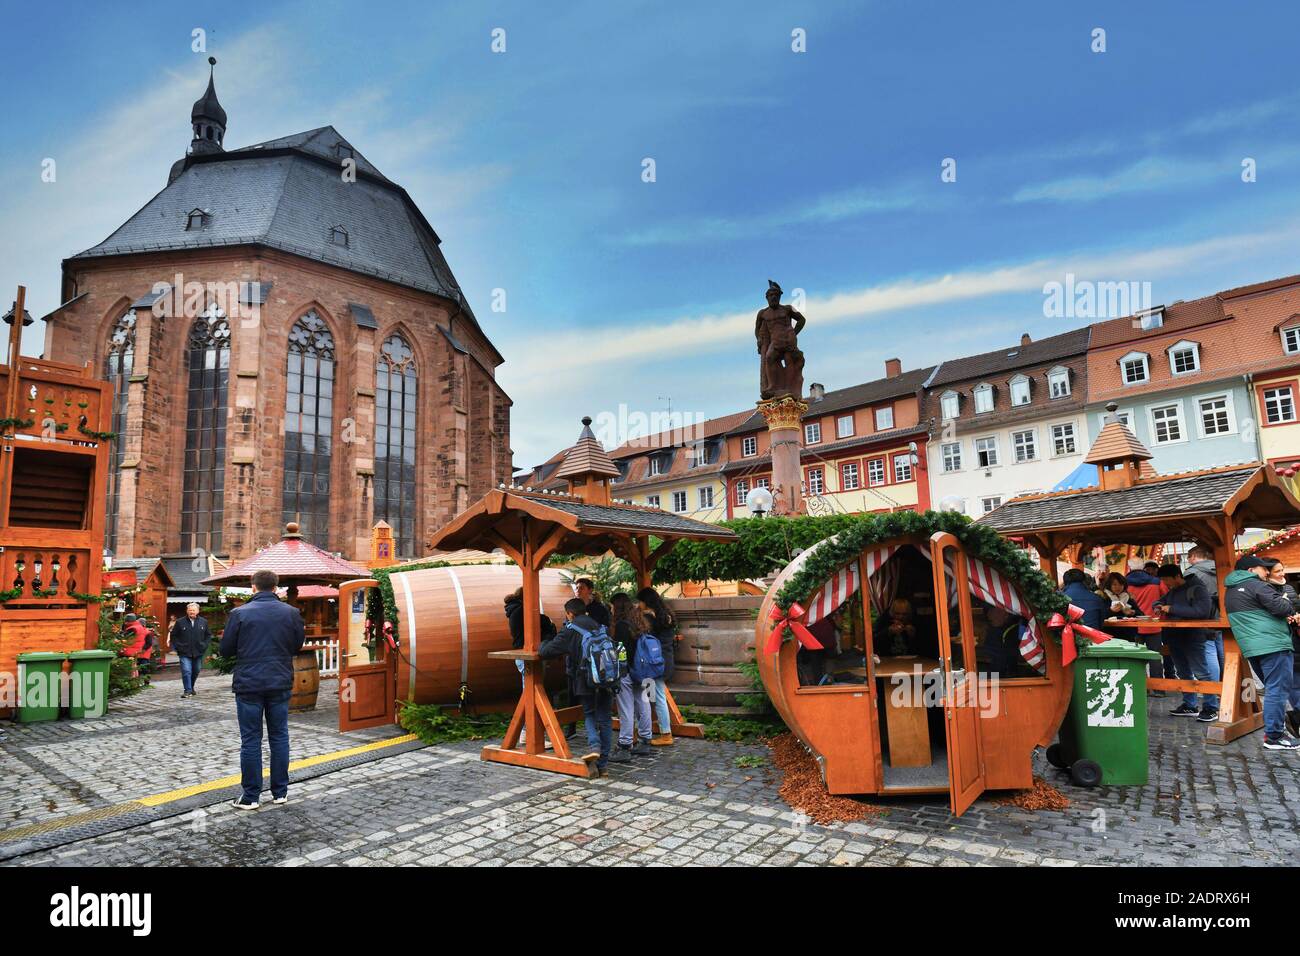 Traditionelle Weihnachtsmarkt vor der Kirche des Heiligen Geistes genannt "Heiliggeistkirche" in Deutsch am Marktplatz im historischen Stadtzentrum Stockfoto